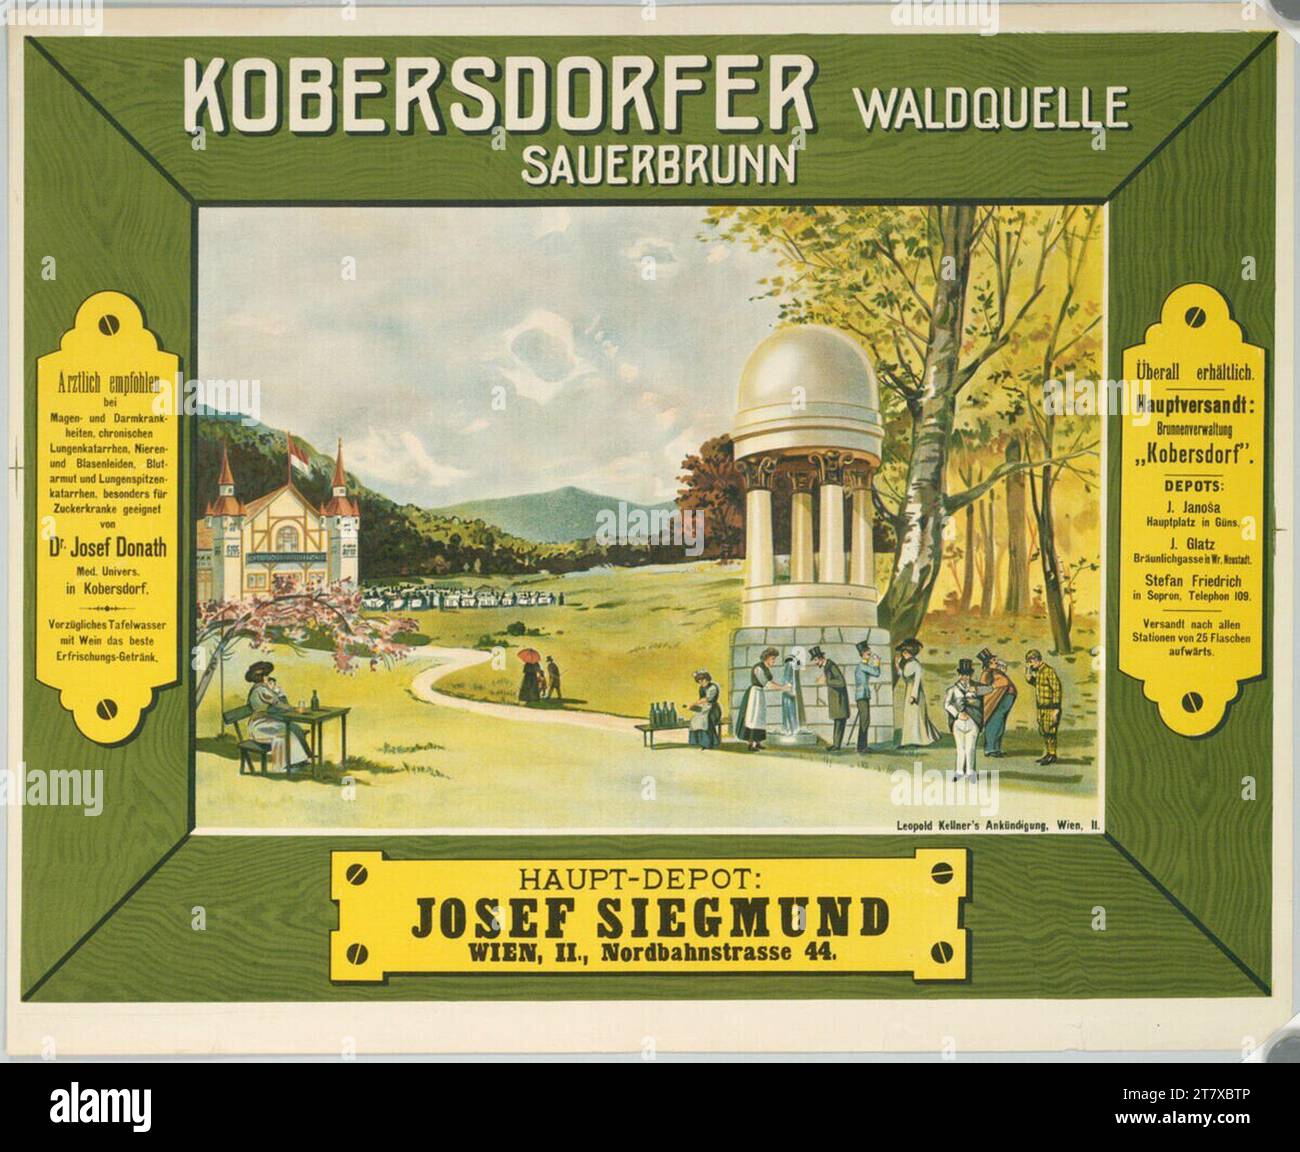 Anonym Kobersdorfer Waldquelle Sauerbrunn; Hauptdepot: Josef Siegmund, Wien, II, Nordbahnstraße 44. Farbe um 1900 Stockfoto